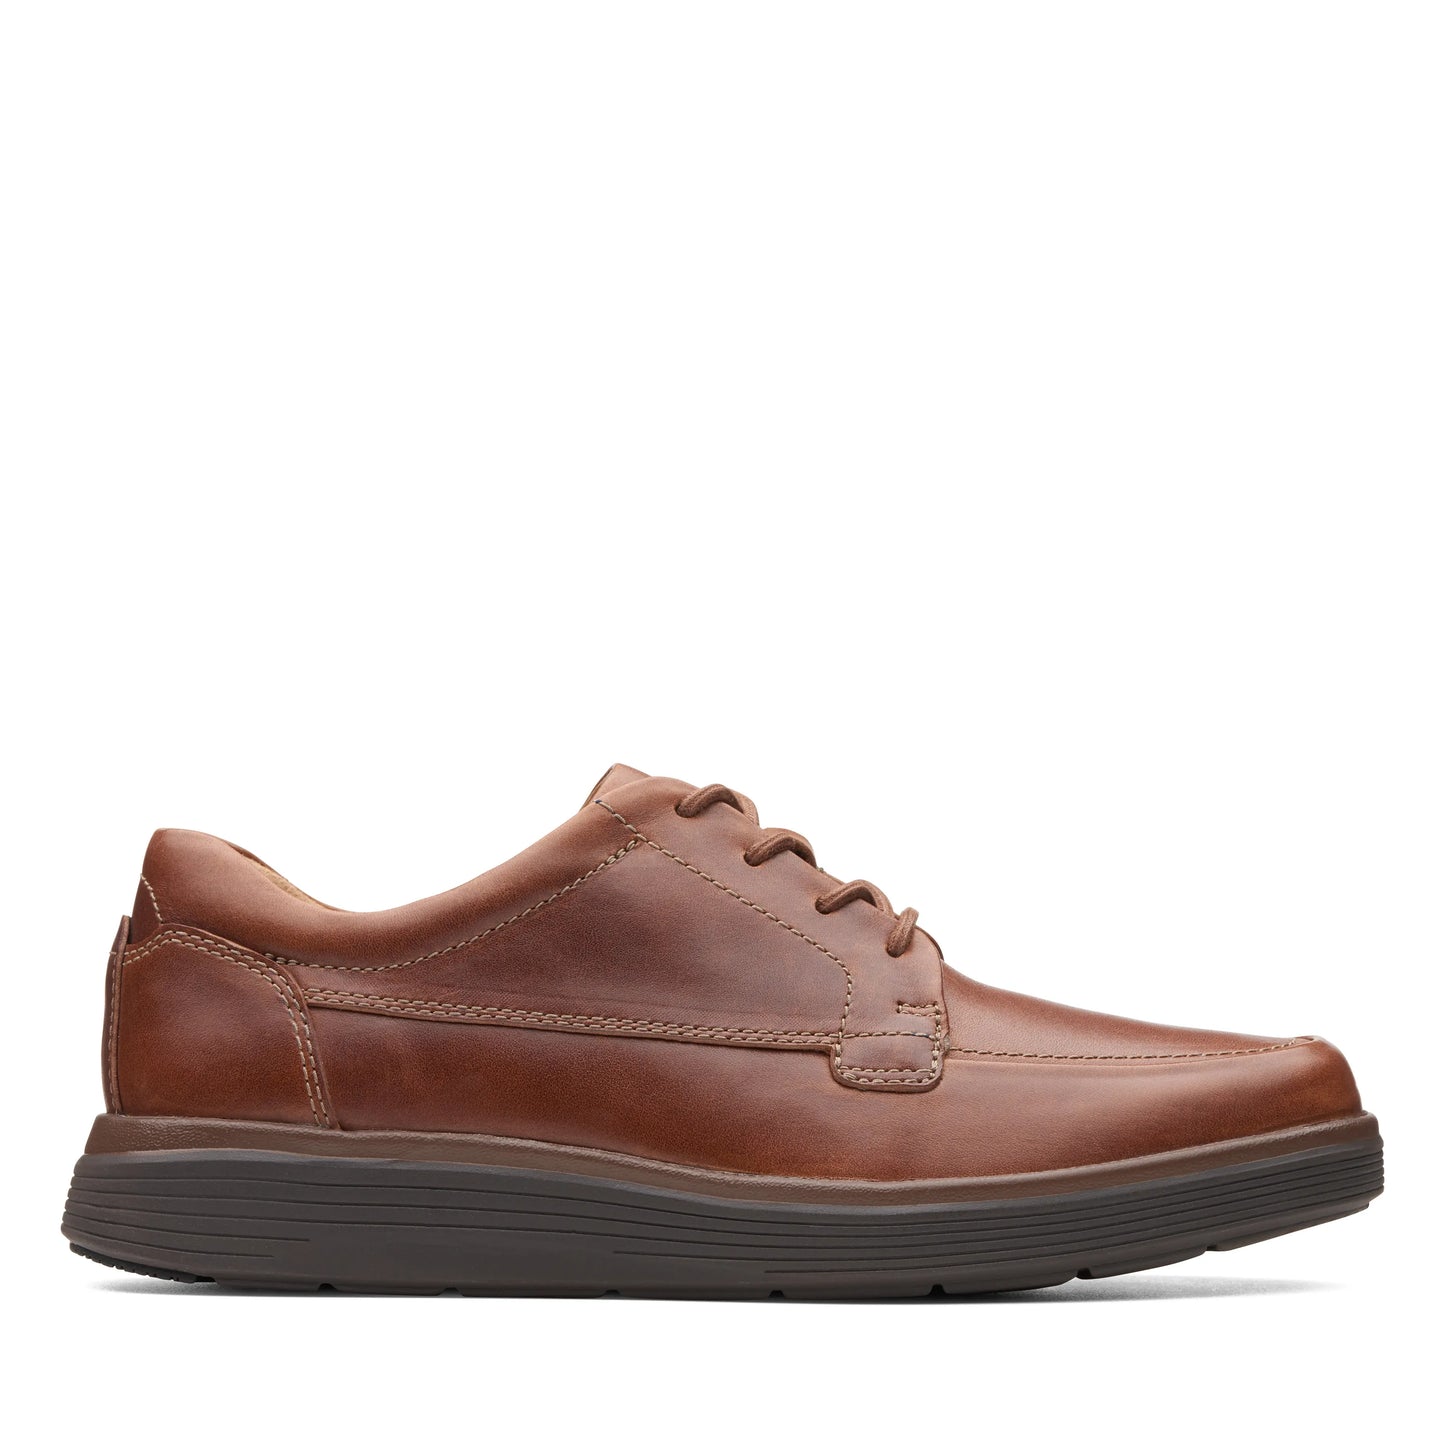 zapatos derby de la marca clarks modelo un abode ease dark tan lea para hombre en color marrón